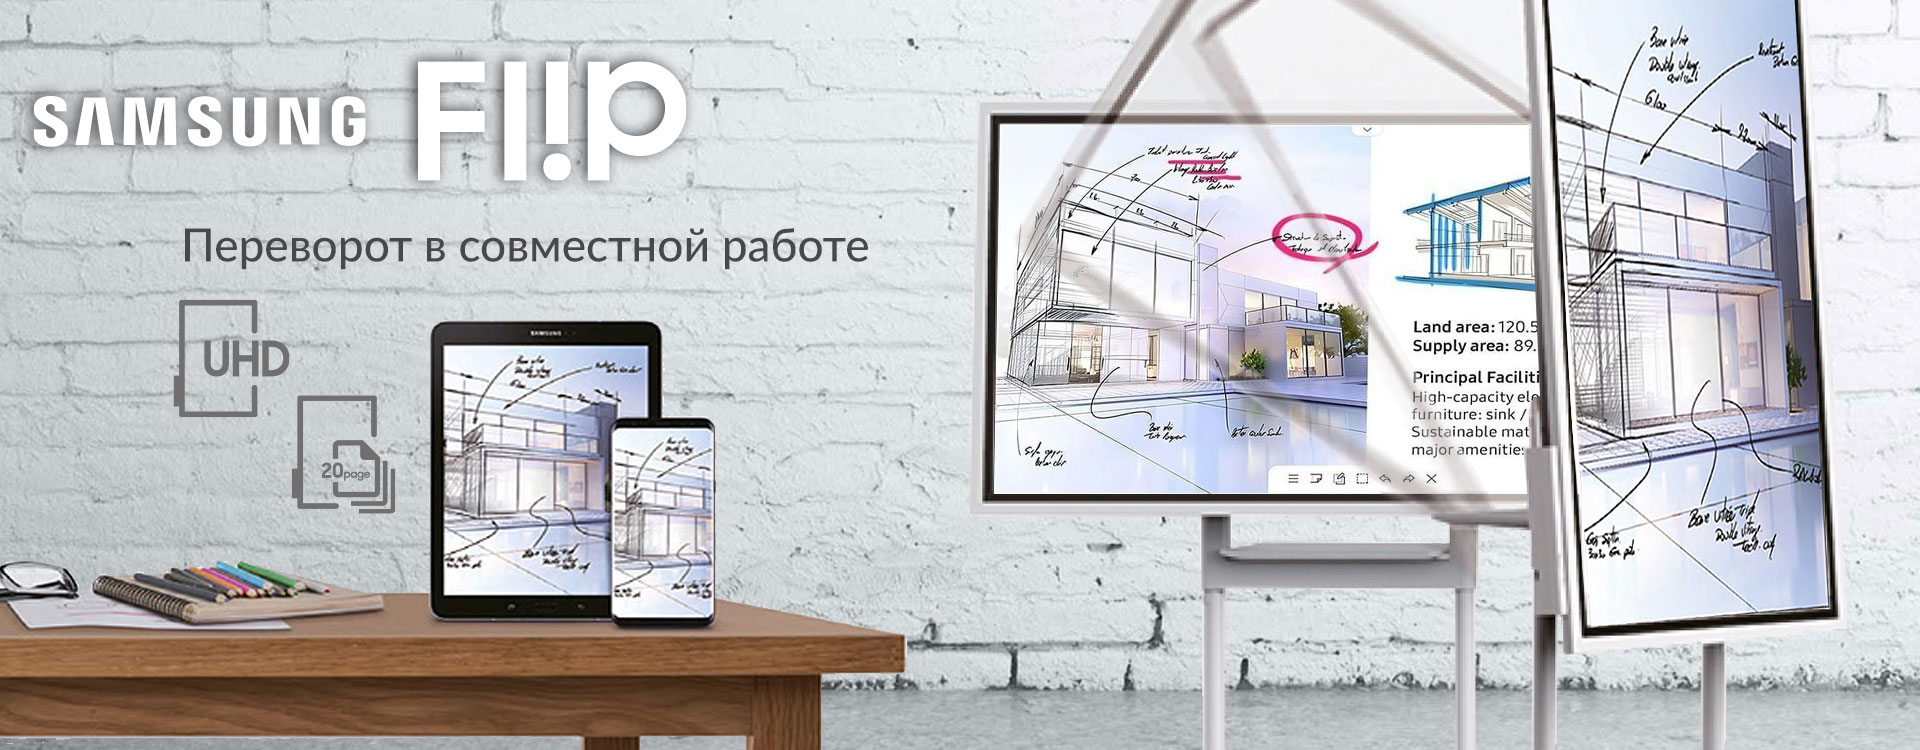 Интерактивный флипчарт Samsung для эффективной совместной работы